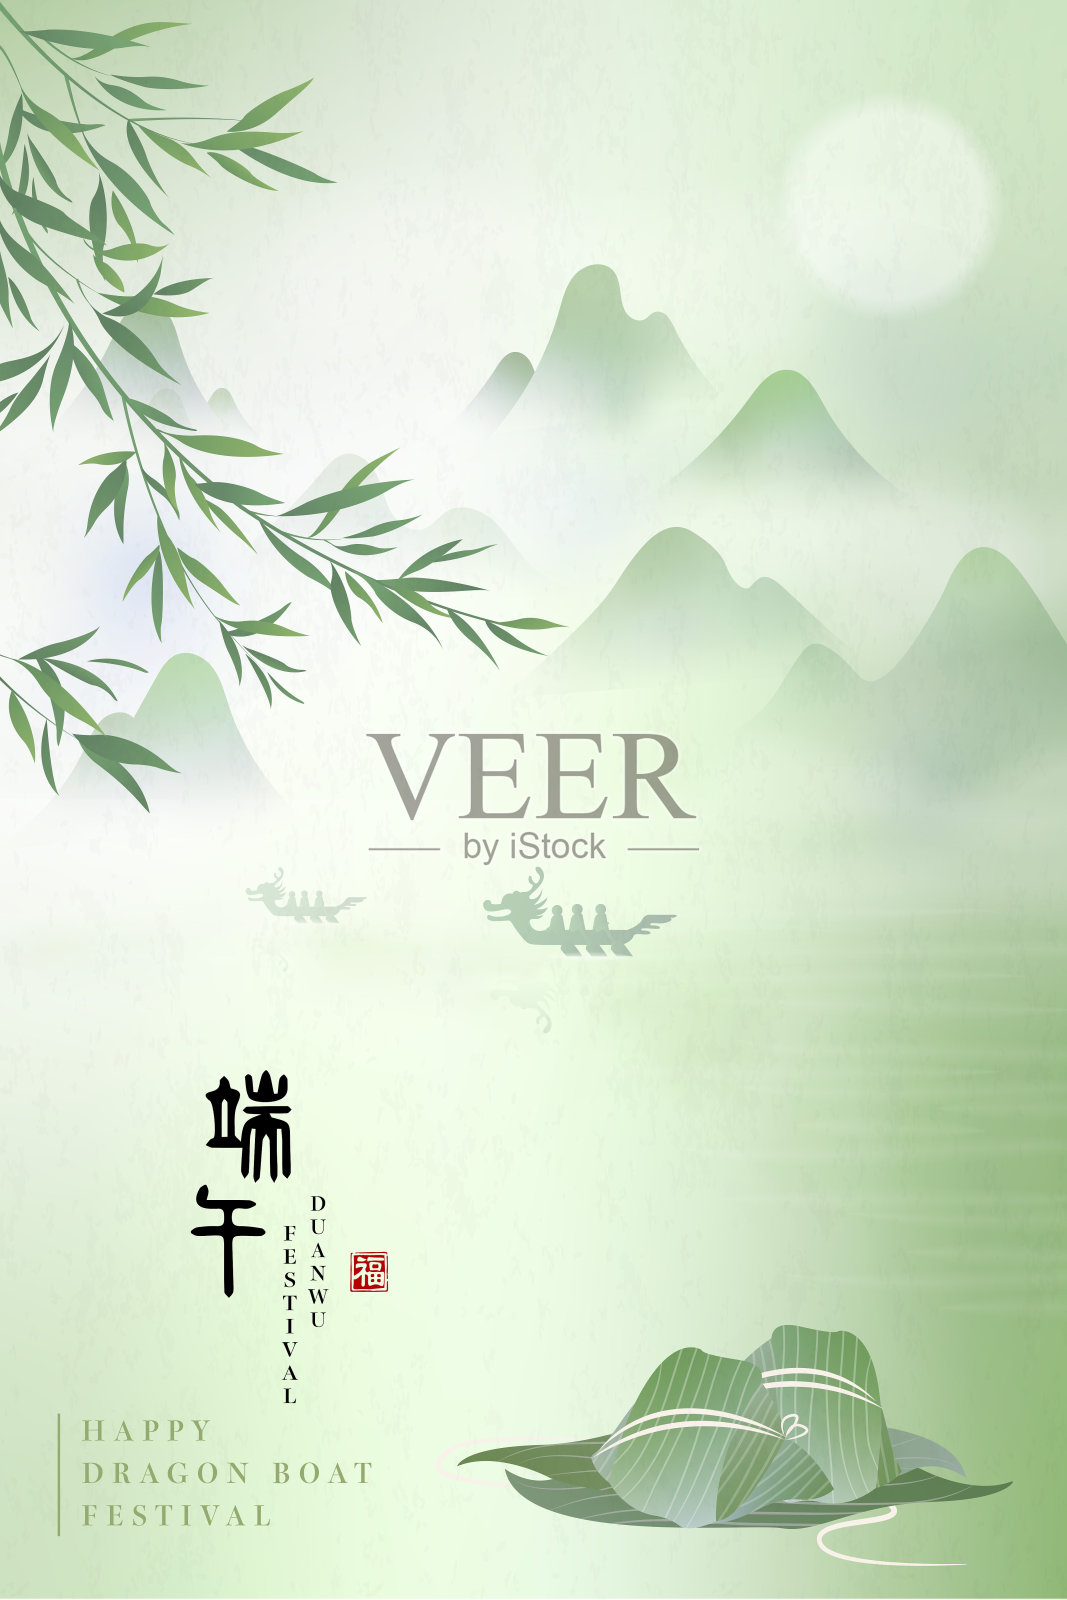 端午节快乐的背景是粽子、竹叶和山水风景。中文翻译:端午和祝福设计模板素材